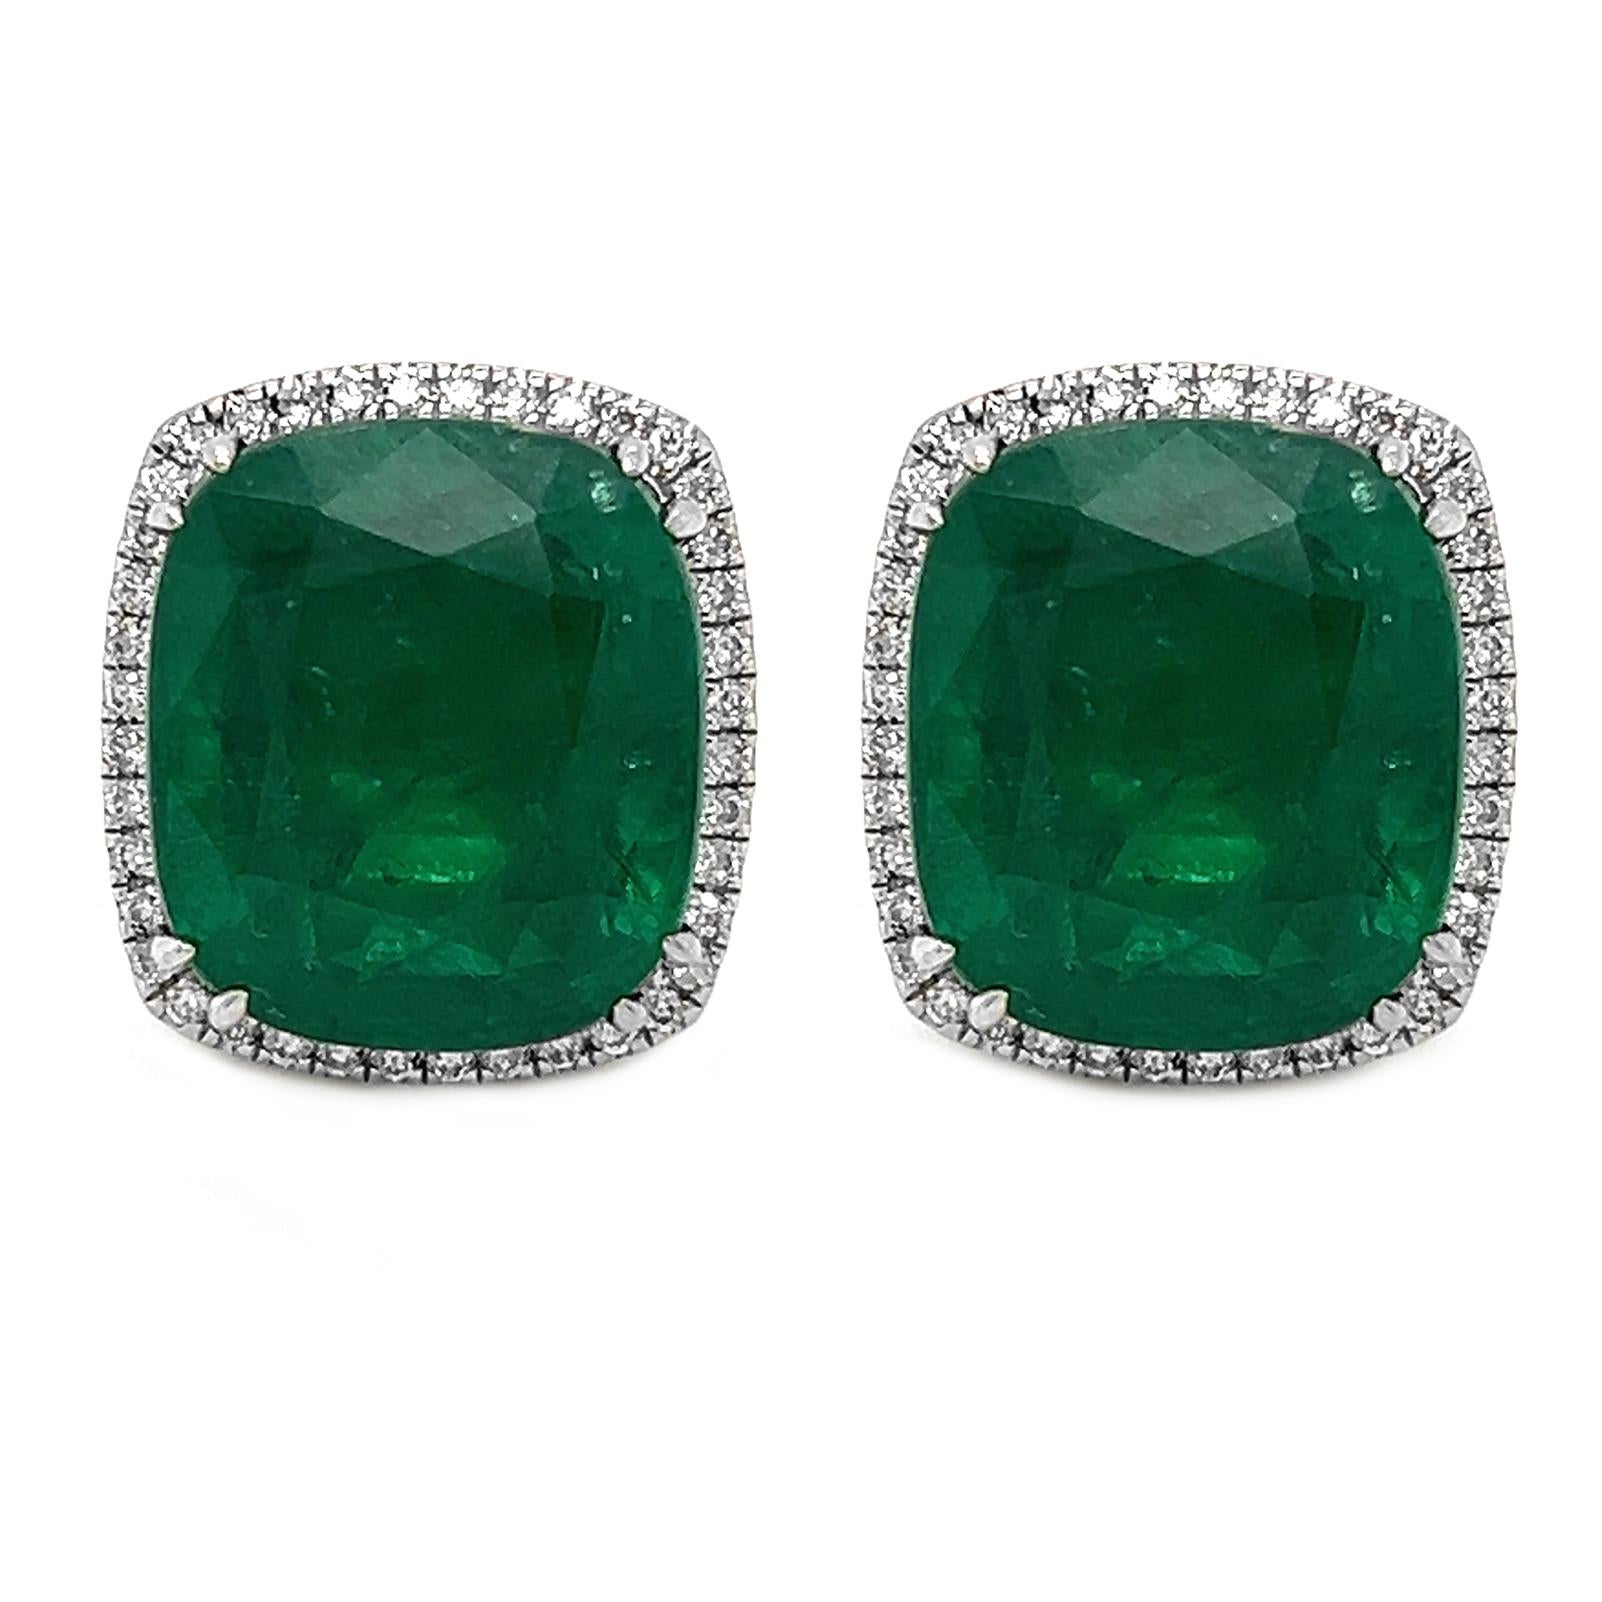 Erhöhen Sie Ihre Eleganz mit diesen außergewöhnlichen 19,23 Total Weight (T.W) Natural Mined Emerald Cushion Diamond Cluster Halo Convertible Earrings in luxuriösem 18KT White Gold. Diese Ohrringe sind ein wahrer Beweis für die Anziehungskraft von